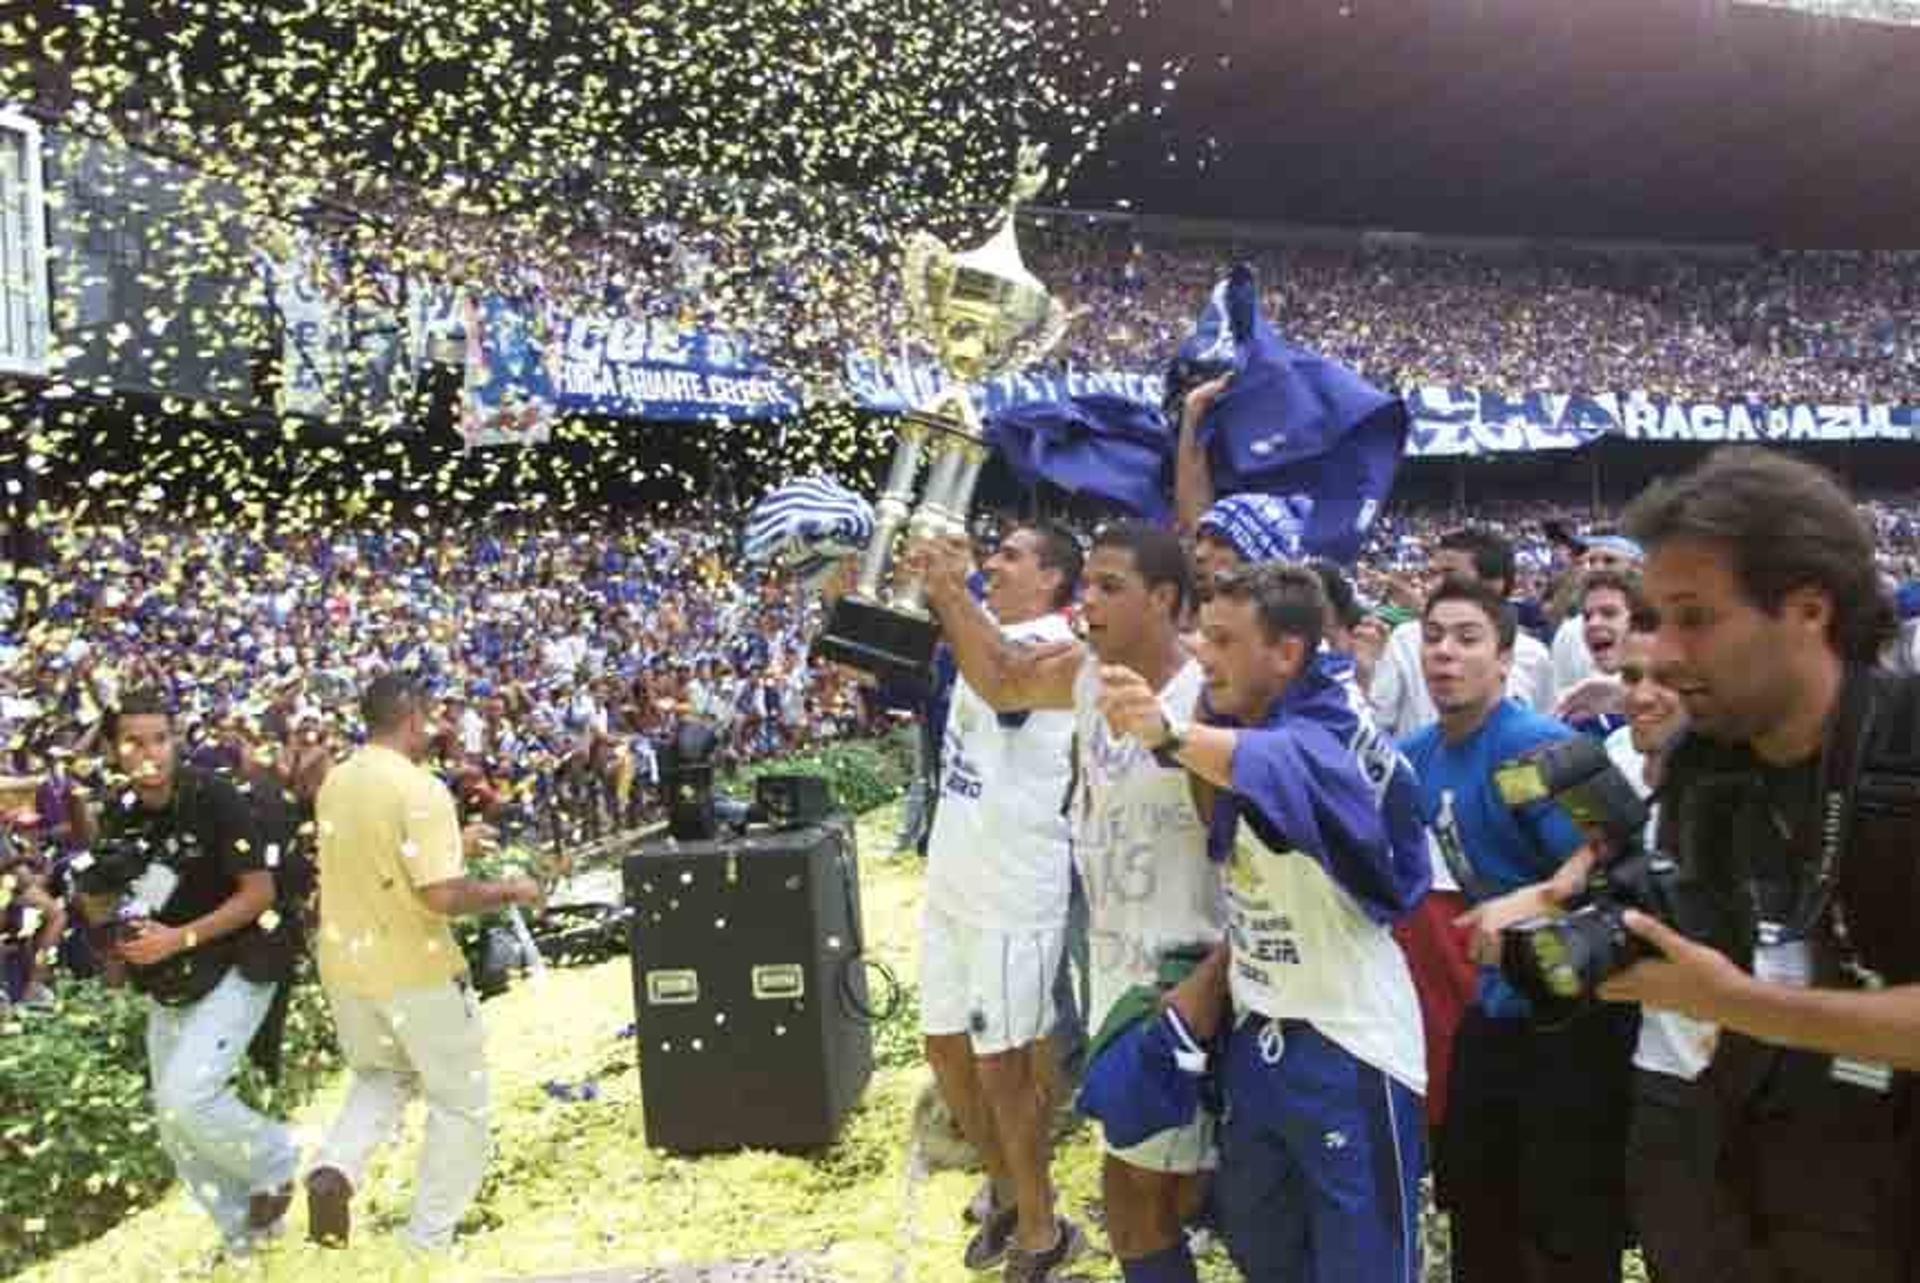 O Cruzeiro foi campeão brasileiro em 2003, na primeira edição disputada em pontos corridos. A Raposa, que conquistou a tríplice coroa naquela temporada, terminou o Brasileirão com 100 pontos. Alex era o grande destaque do time, comandado por Vanderlei Luxemburgo.